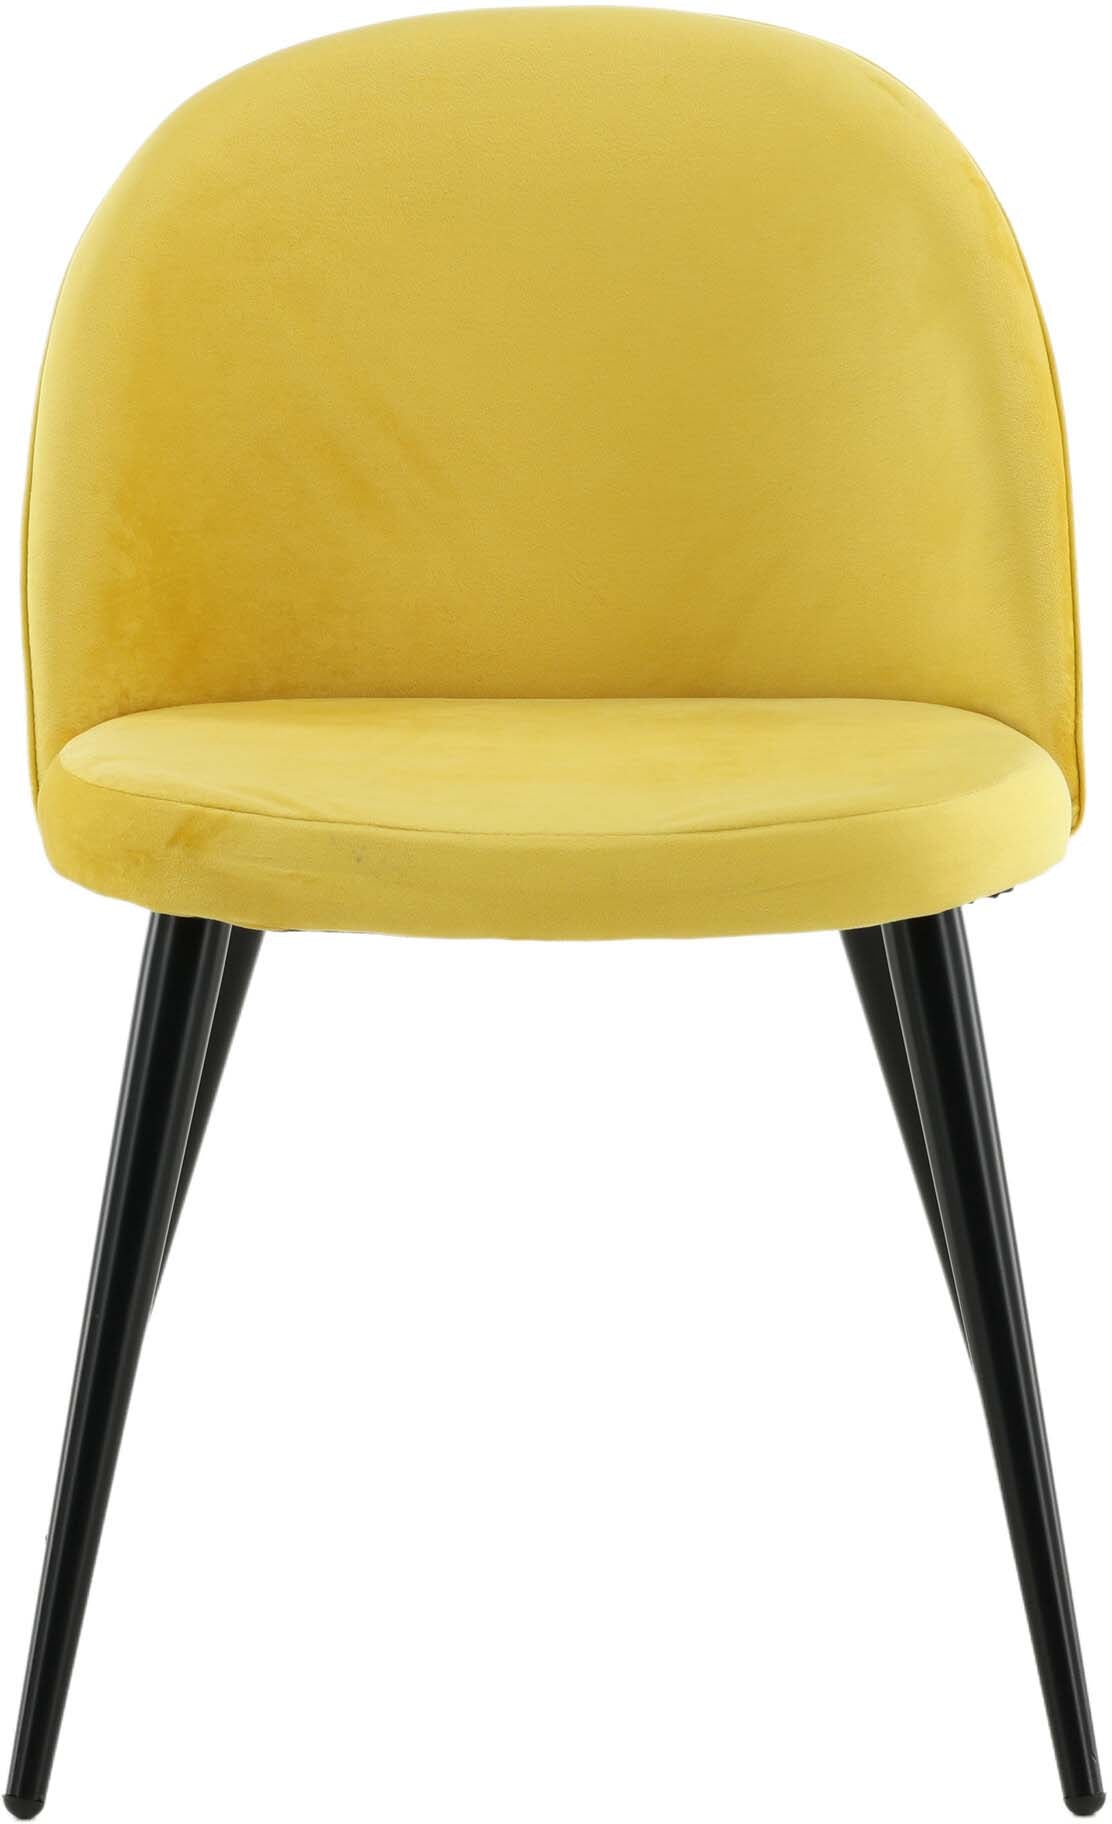 Velvet Matstol Stuhl in Gelb / Schwarz präsentiert im Onlineshop von KAQTU Design AG. Schalenstuhl ist von Venture Home